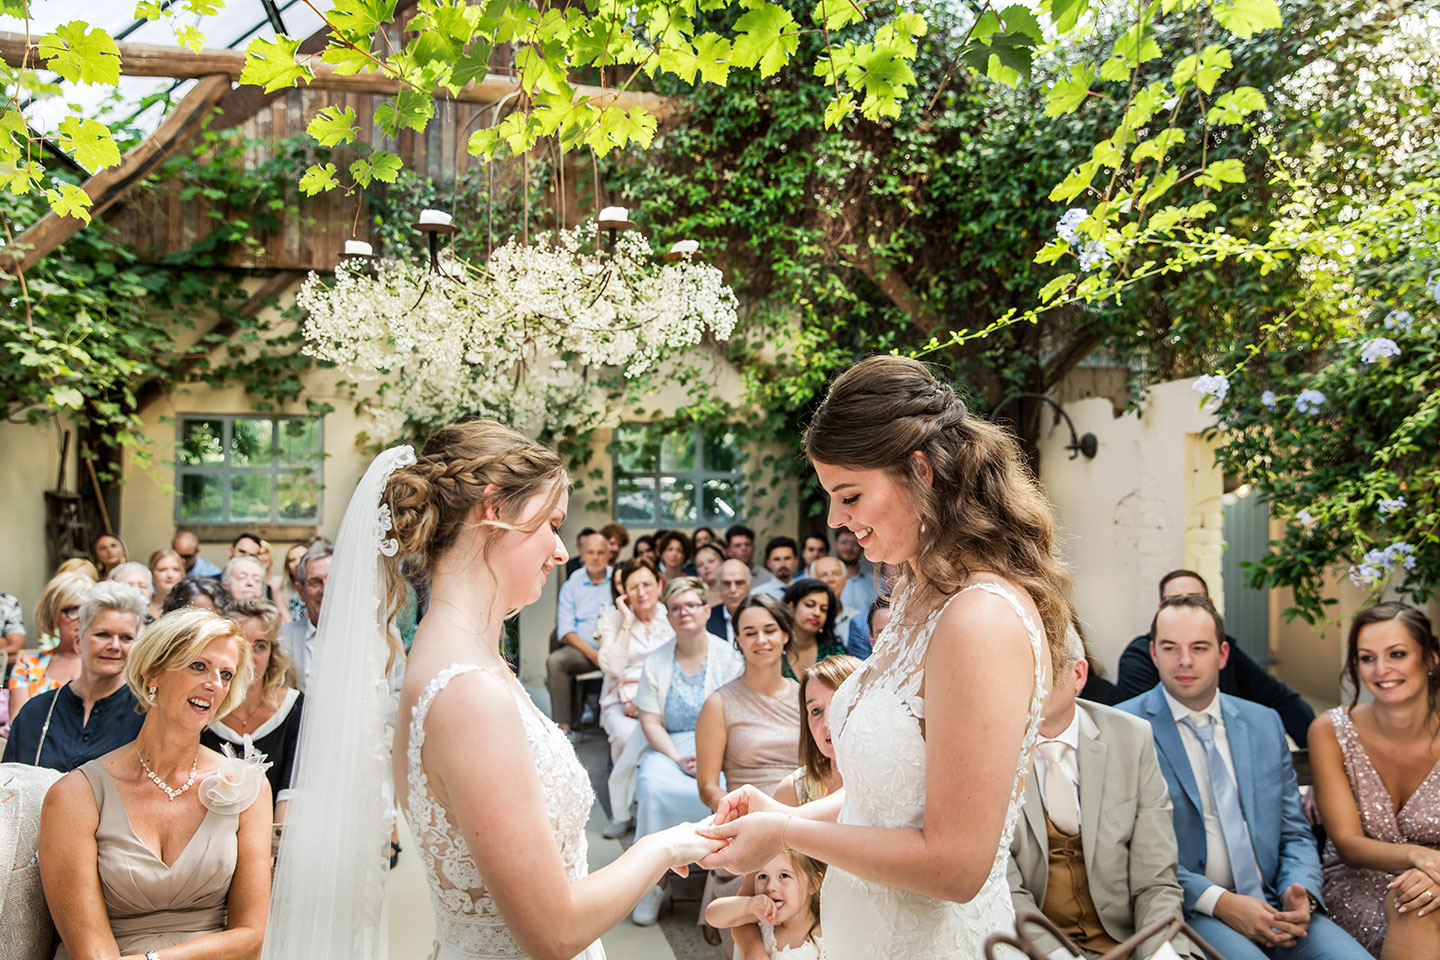 Ceremonie bruiloft bij Domaine d'Heerstaayen van twee lesbische vrouwen